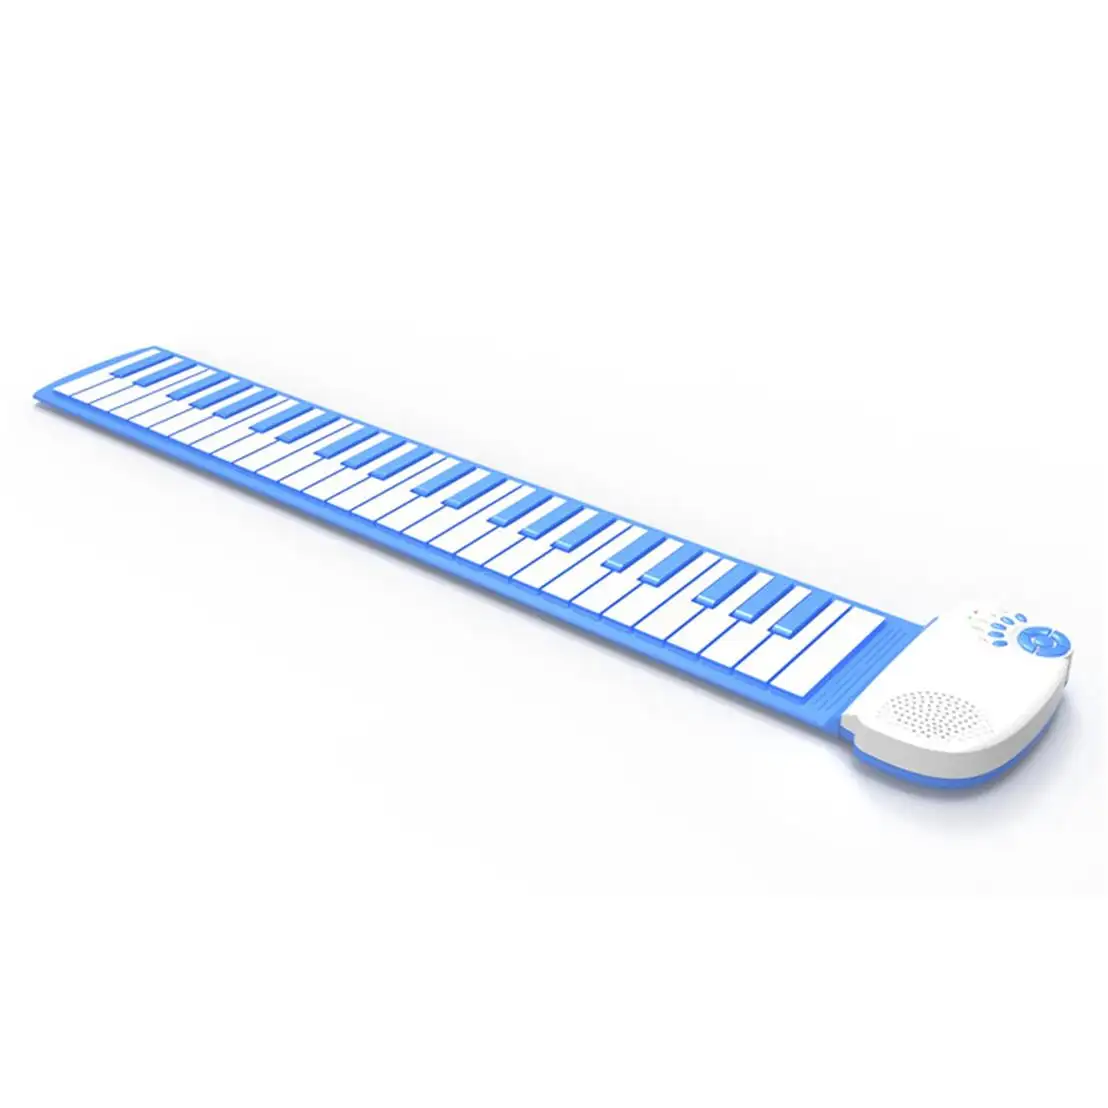 2022 קידום מכירות מתנה Midi מקלדות מתקפל דיגיטלי להפשיל kawai פסנתר 49 מפתחות עם built רמקול